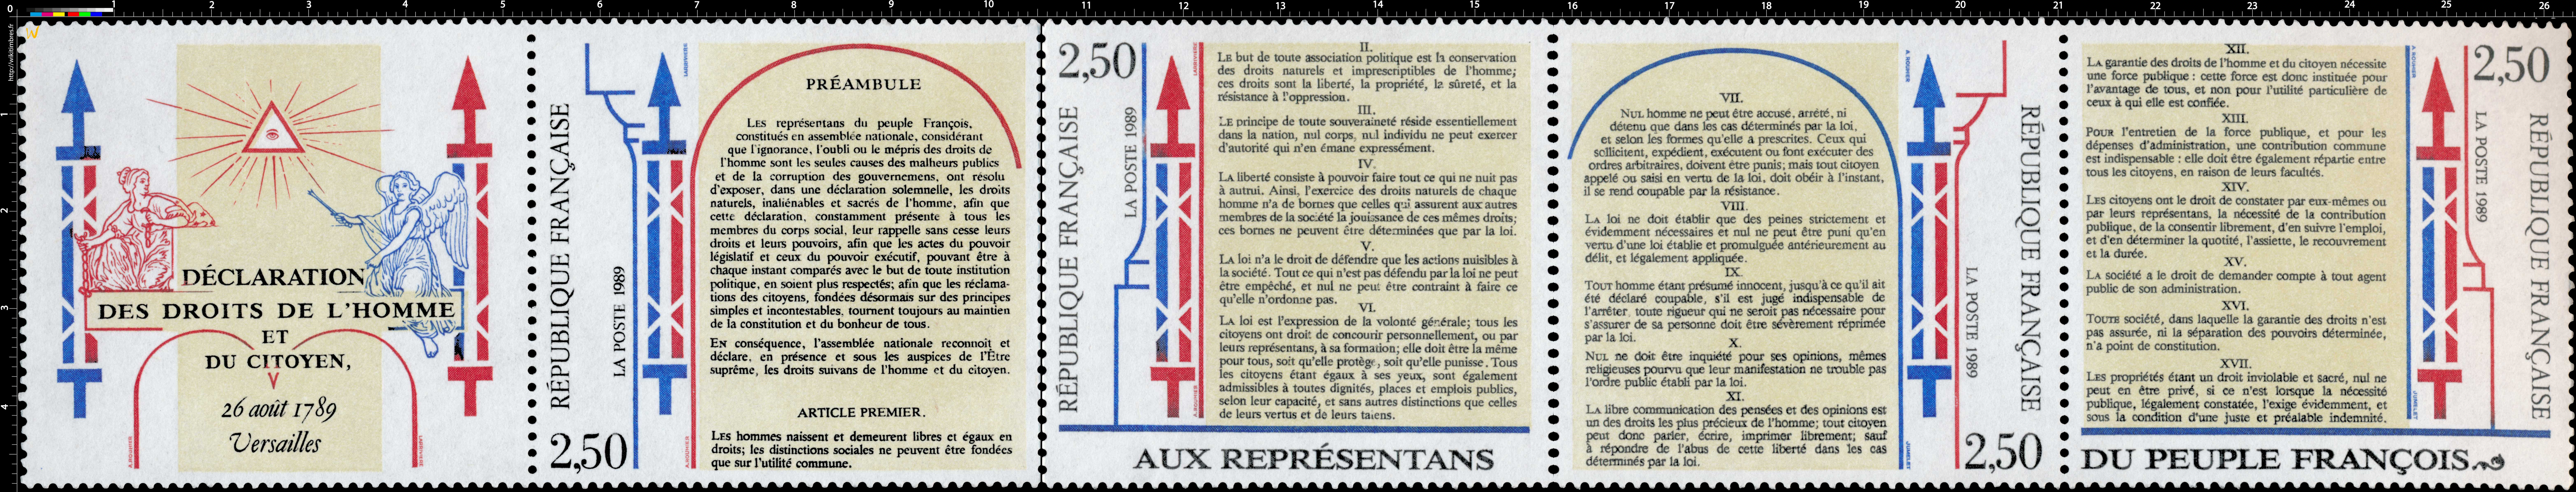 1989 DÉCLARATION DES DROITS DE L'HOMME ET DU CITOYEN